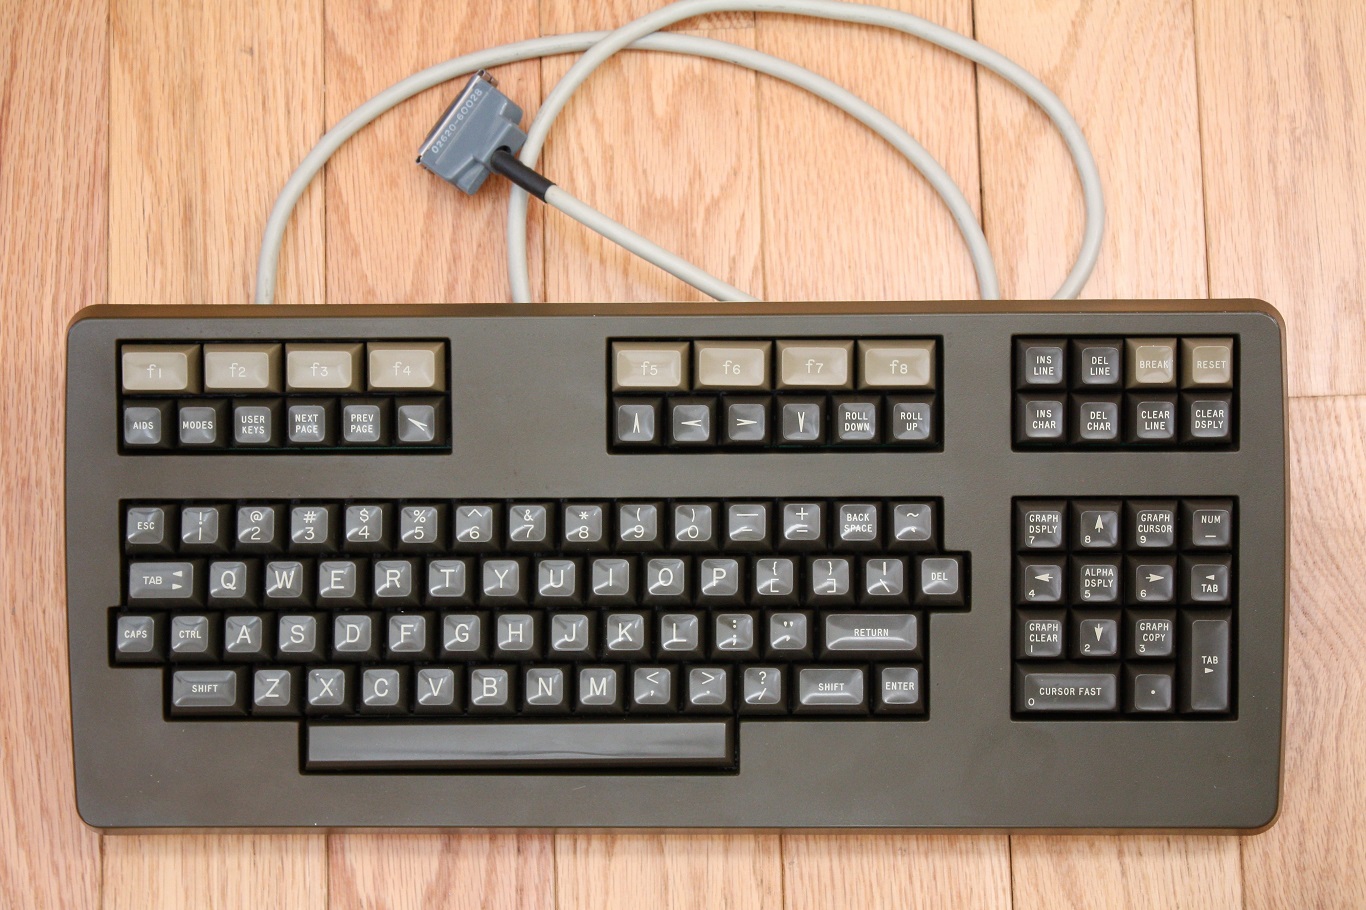 Hewlett Packard 2623A - keyboard top